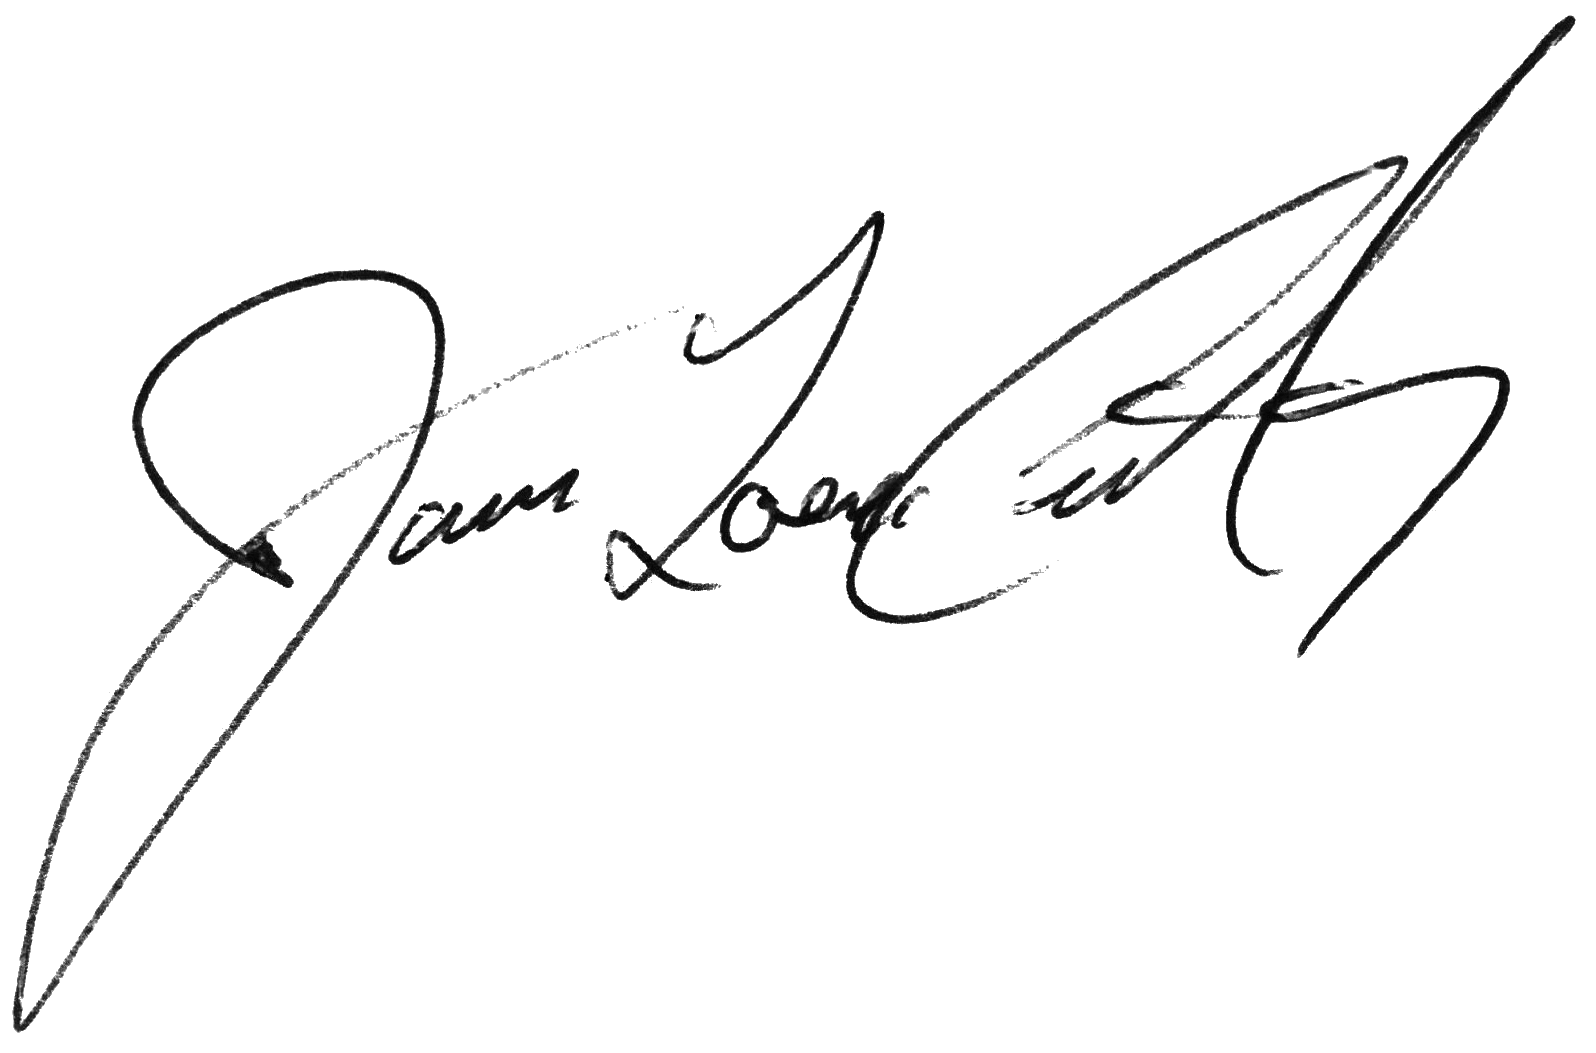 Cervantes signature